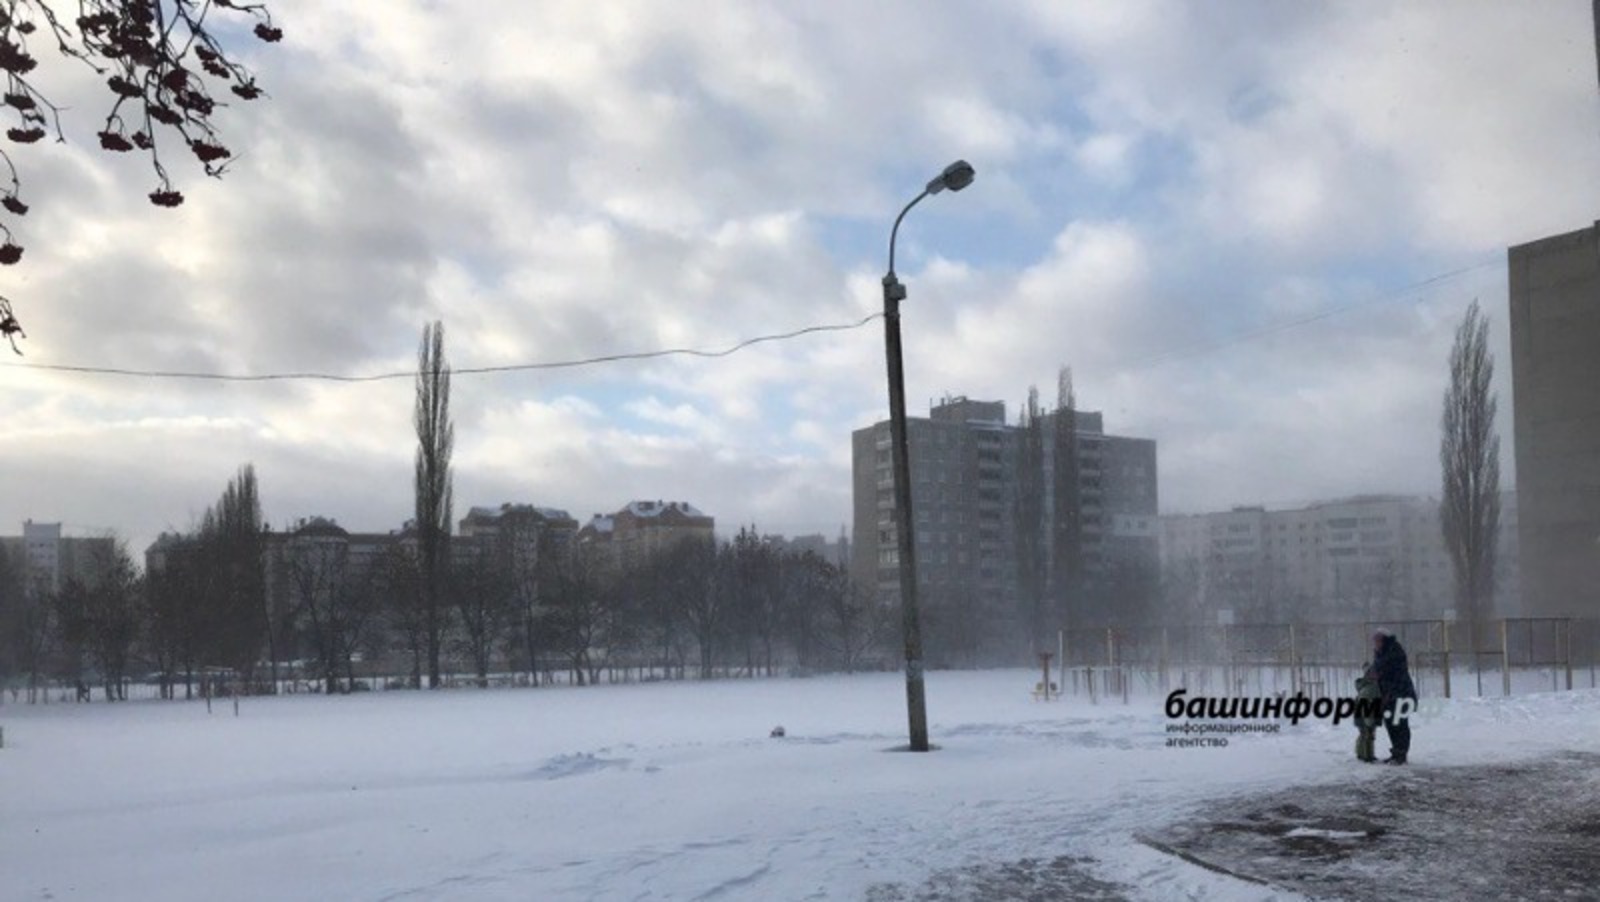 МЧС по Башкирии предупреждает о похолодании до -28 градусов, сильном ветре и тумане